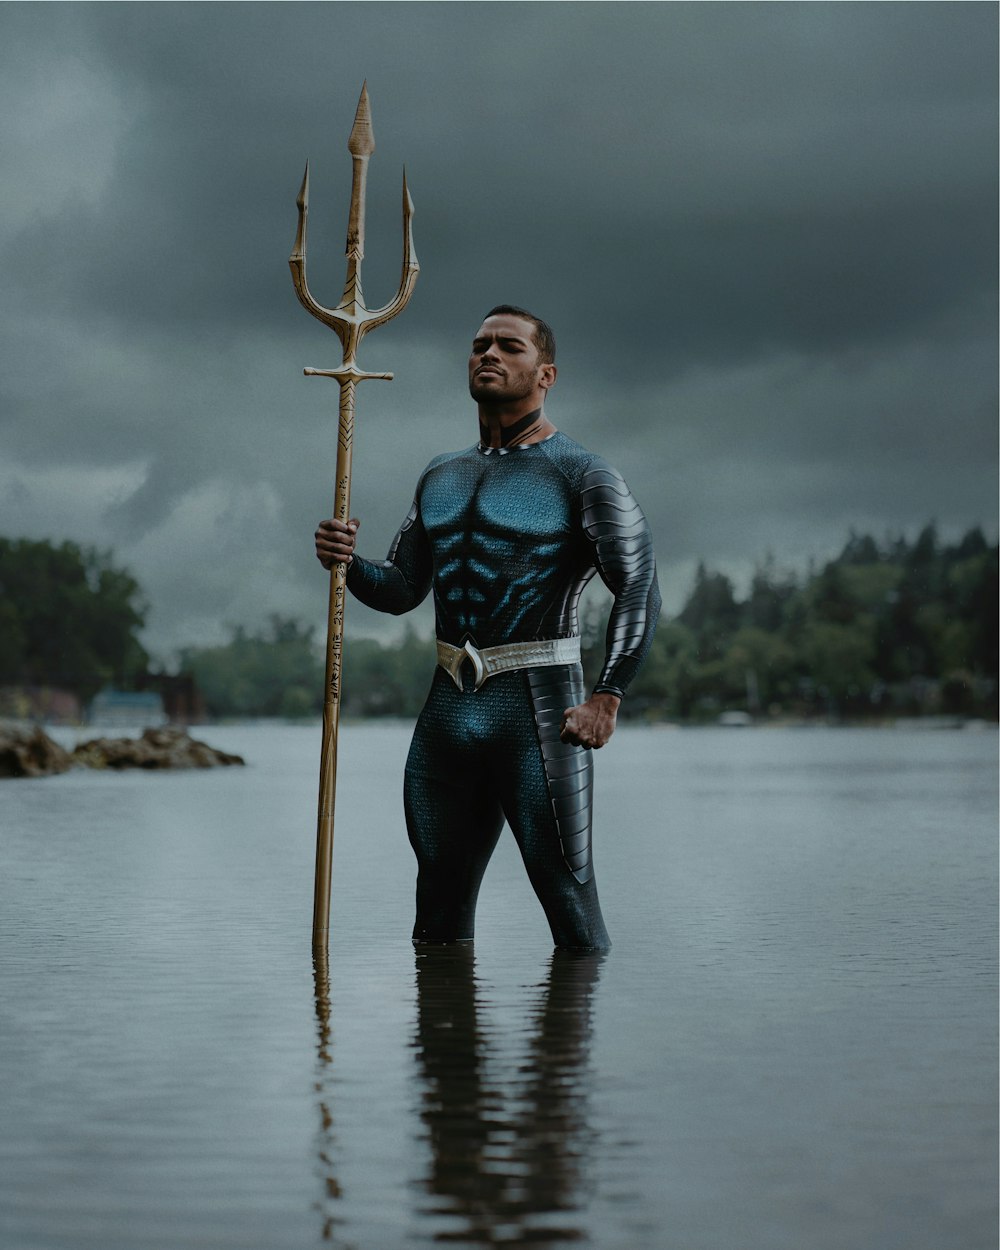 大きな金属製の棒を持って水の中に立っている男